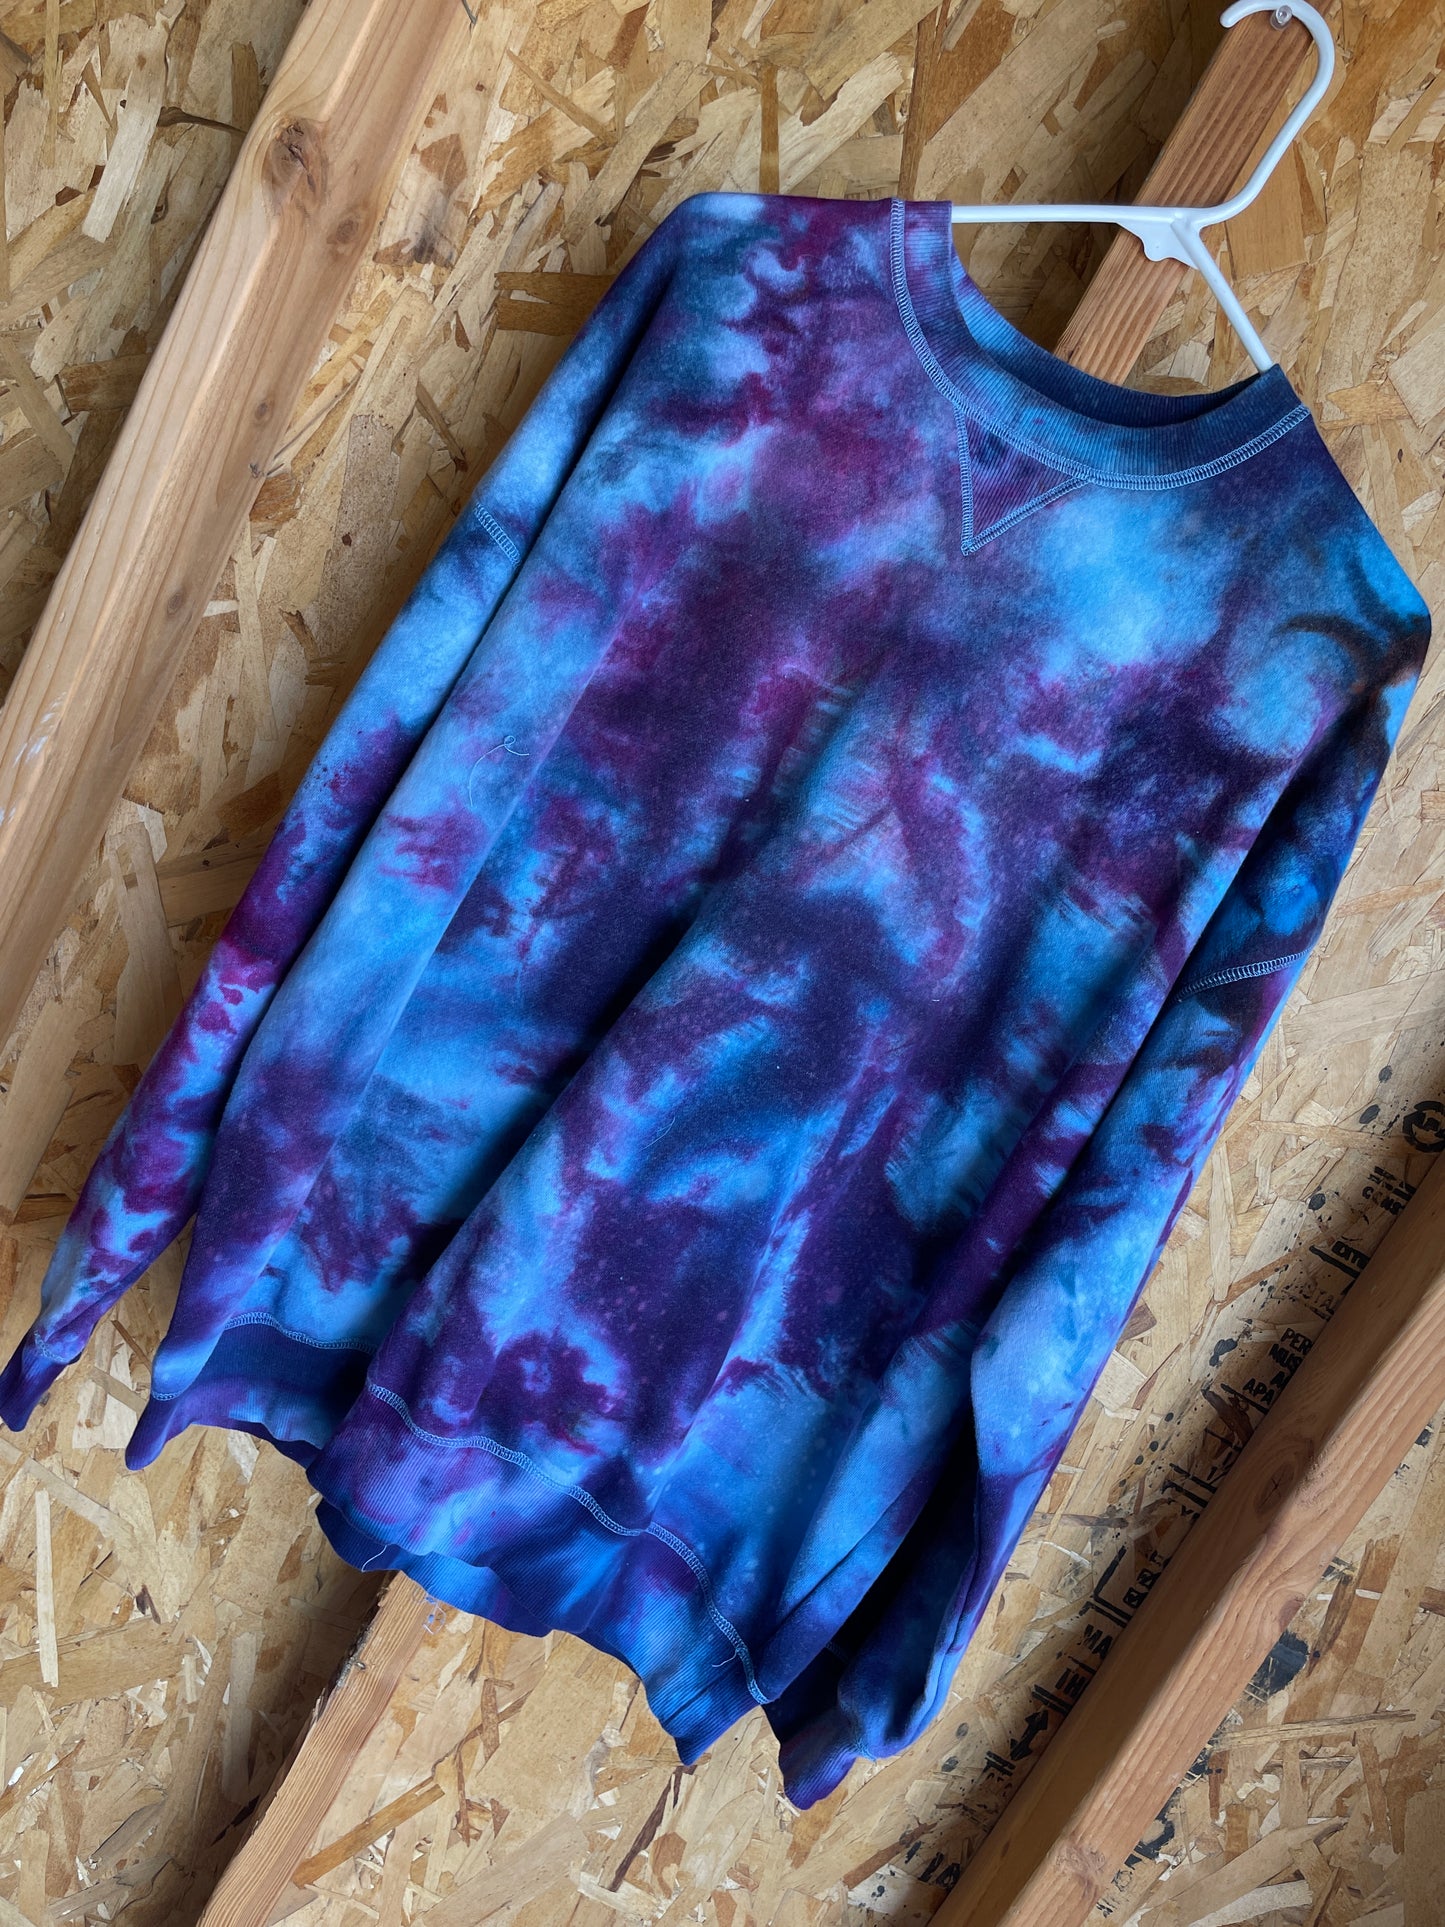 Large Women's Galaxy Dye Handmade Tie Dye Sweatshirt | Pink and Purple Galaxy Dye Tie Dye Long Sleeve